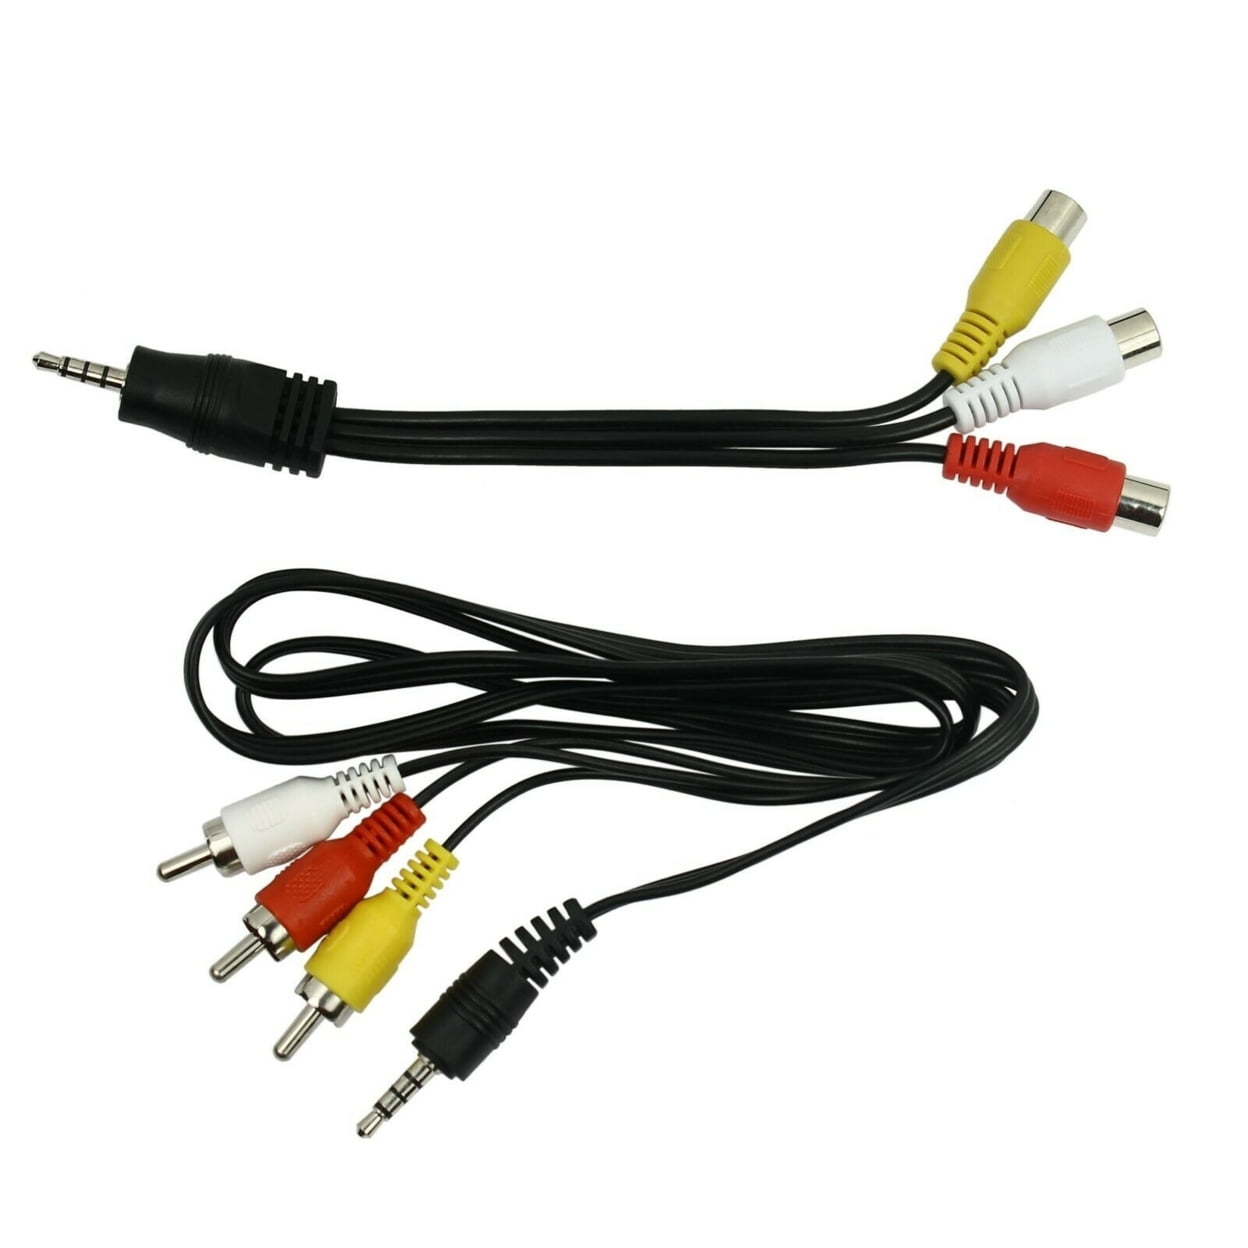 Hosa C3M-105 Cable Rca a Mini Plug de 91cm - C3M-105 - Cables y